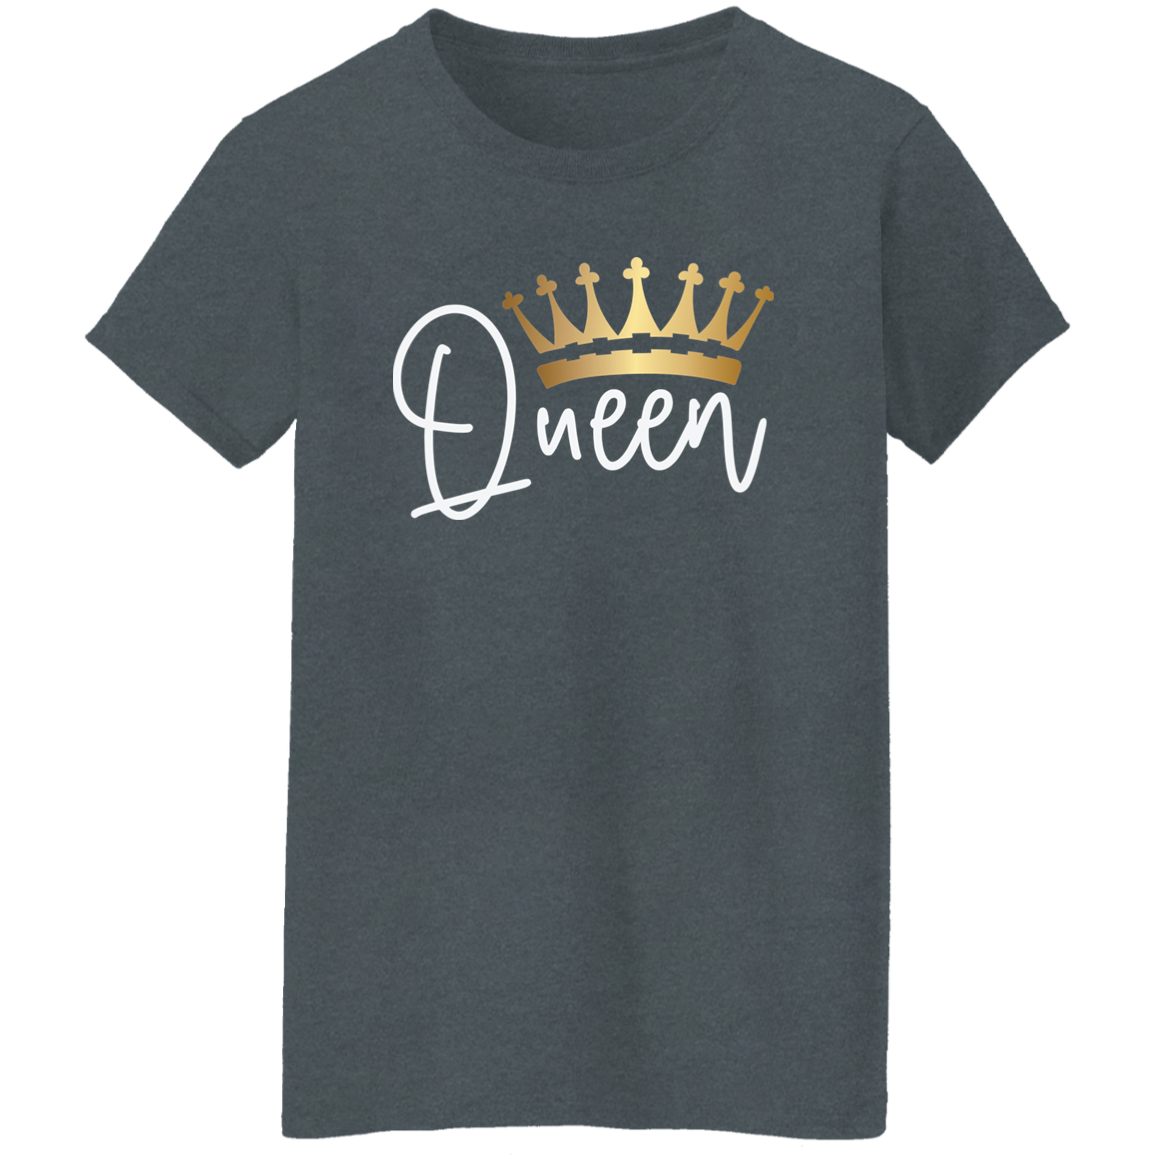 Queen Ladies' 5.3 oz. T-Shirt